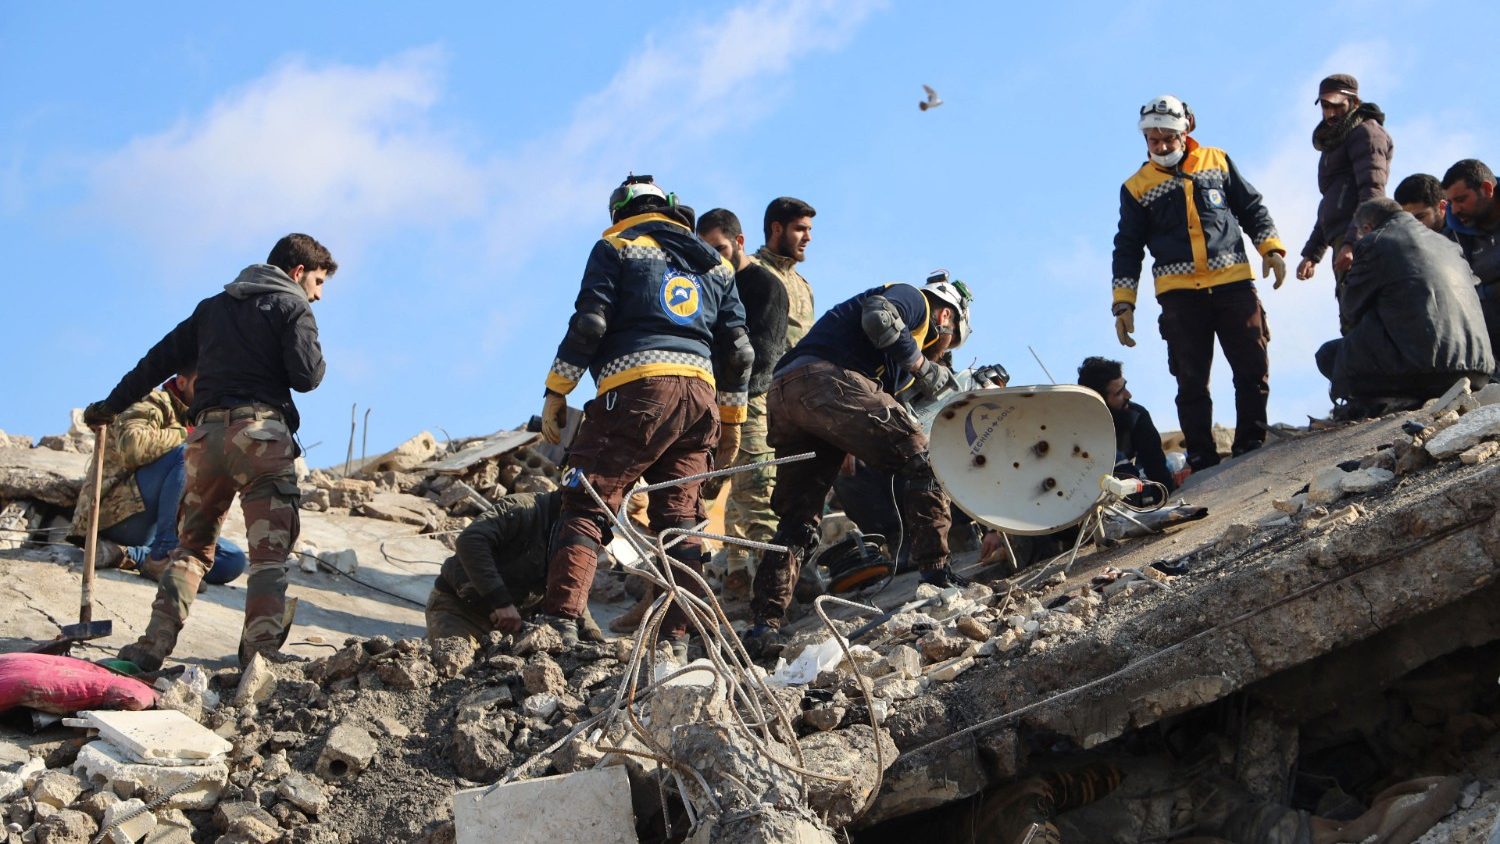 Церковь в Сирии присоединилась к помощи пострадавшим от землетрясения